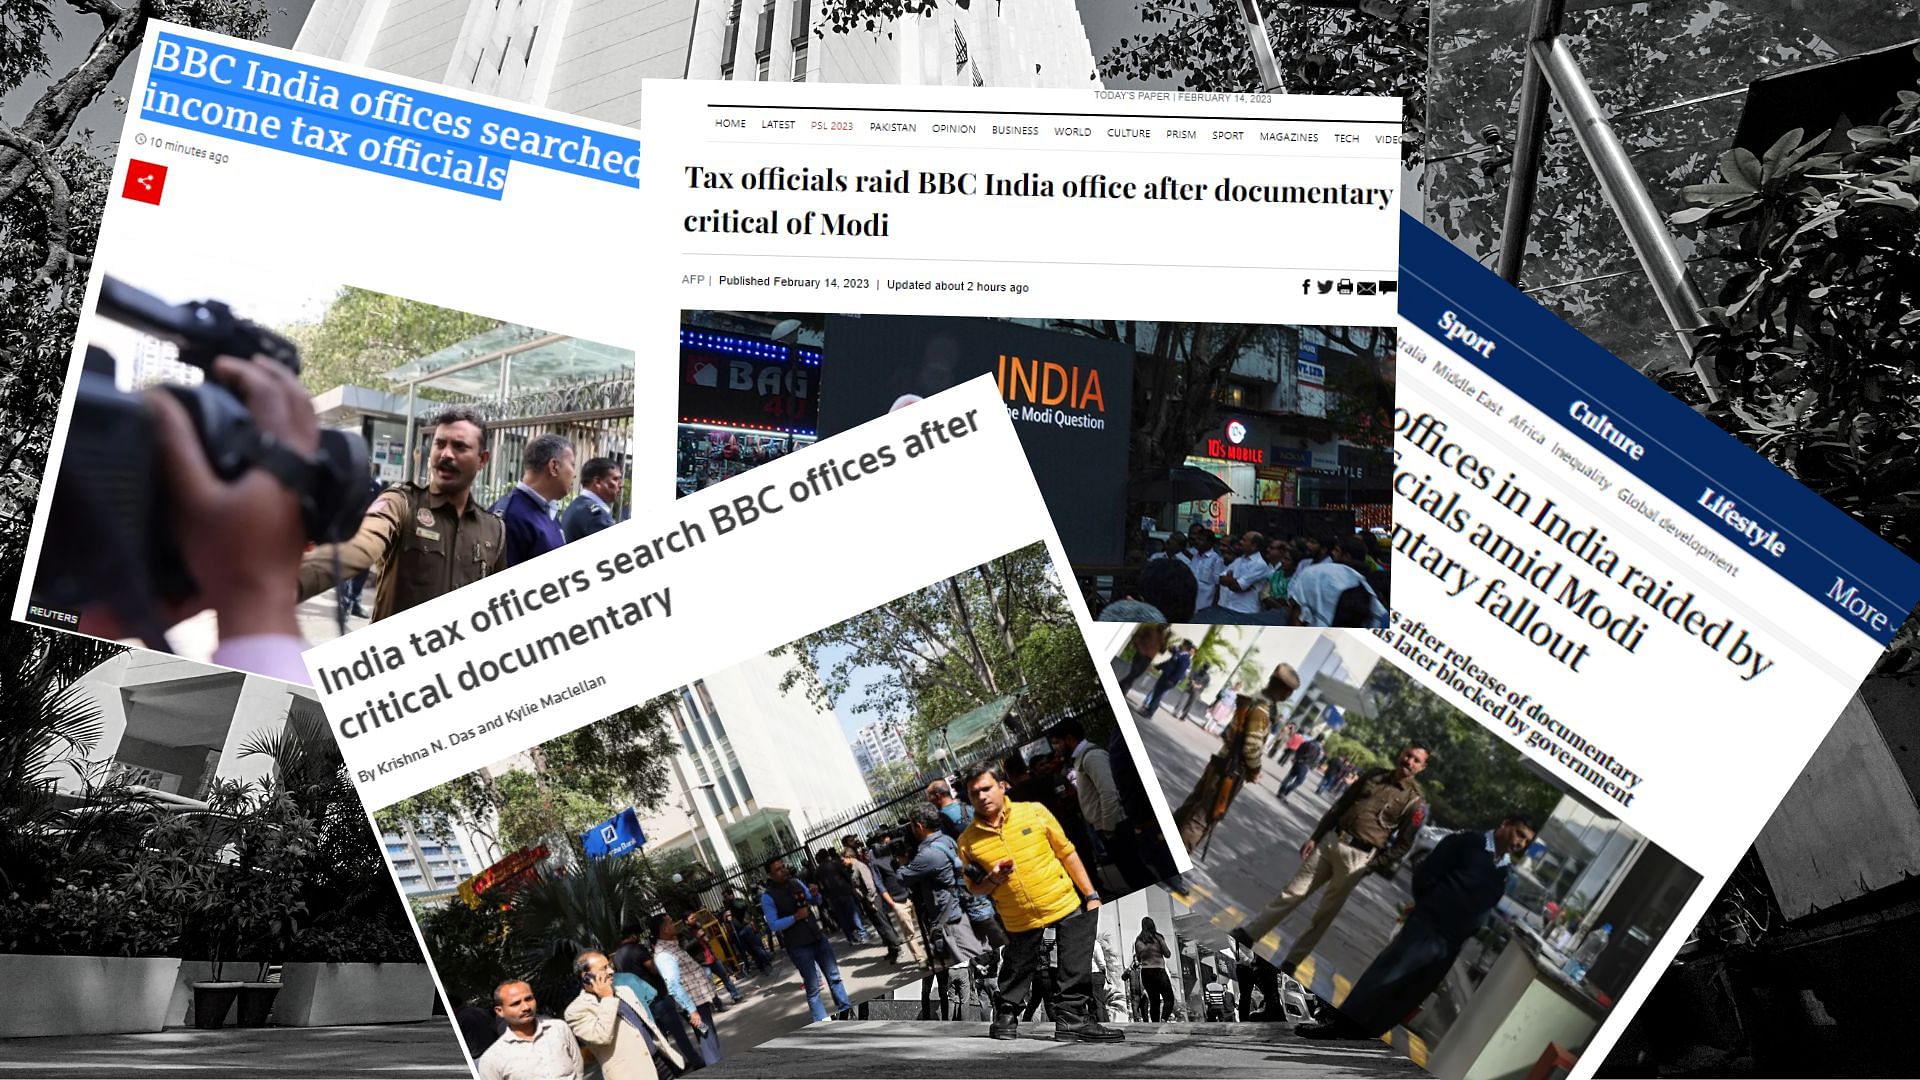 <div class="paragraphs"><p>BBC इंडिया पर आयकर विभाग के एक्शन को लेकर इंटरनेशनल मीडिया क्या लिख रहा है?</p></div>